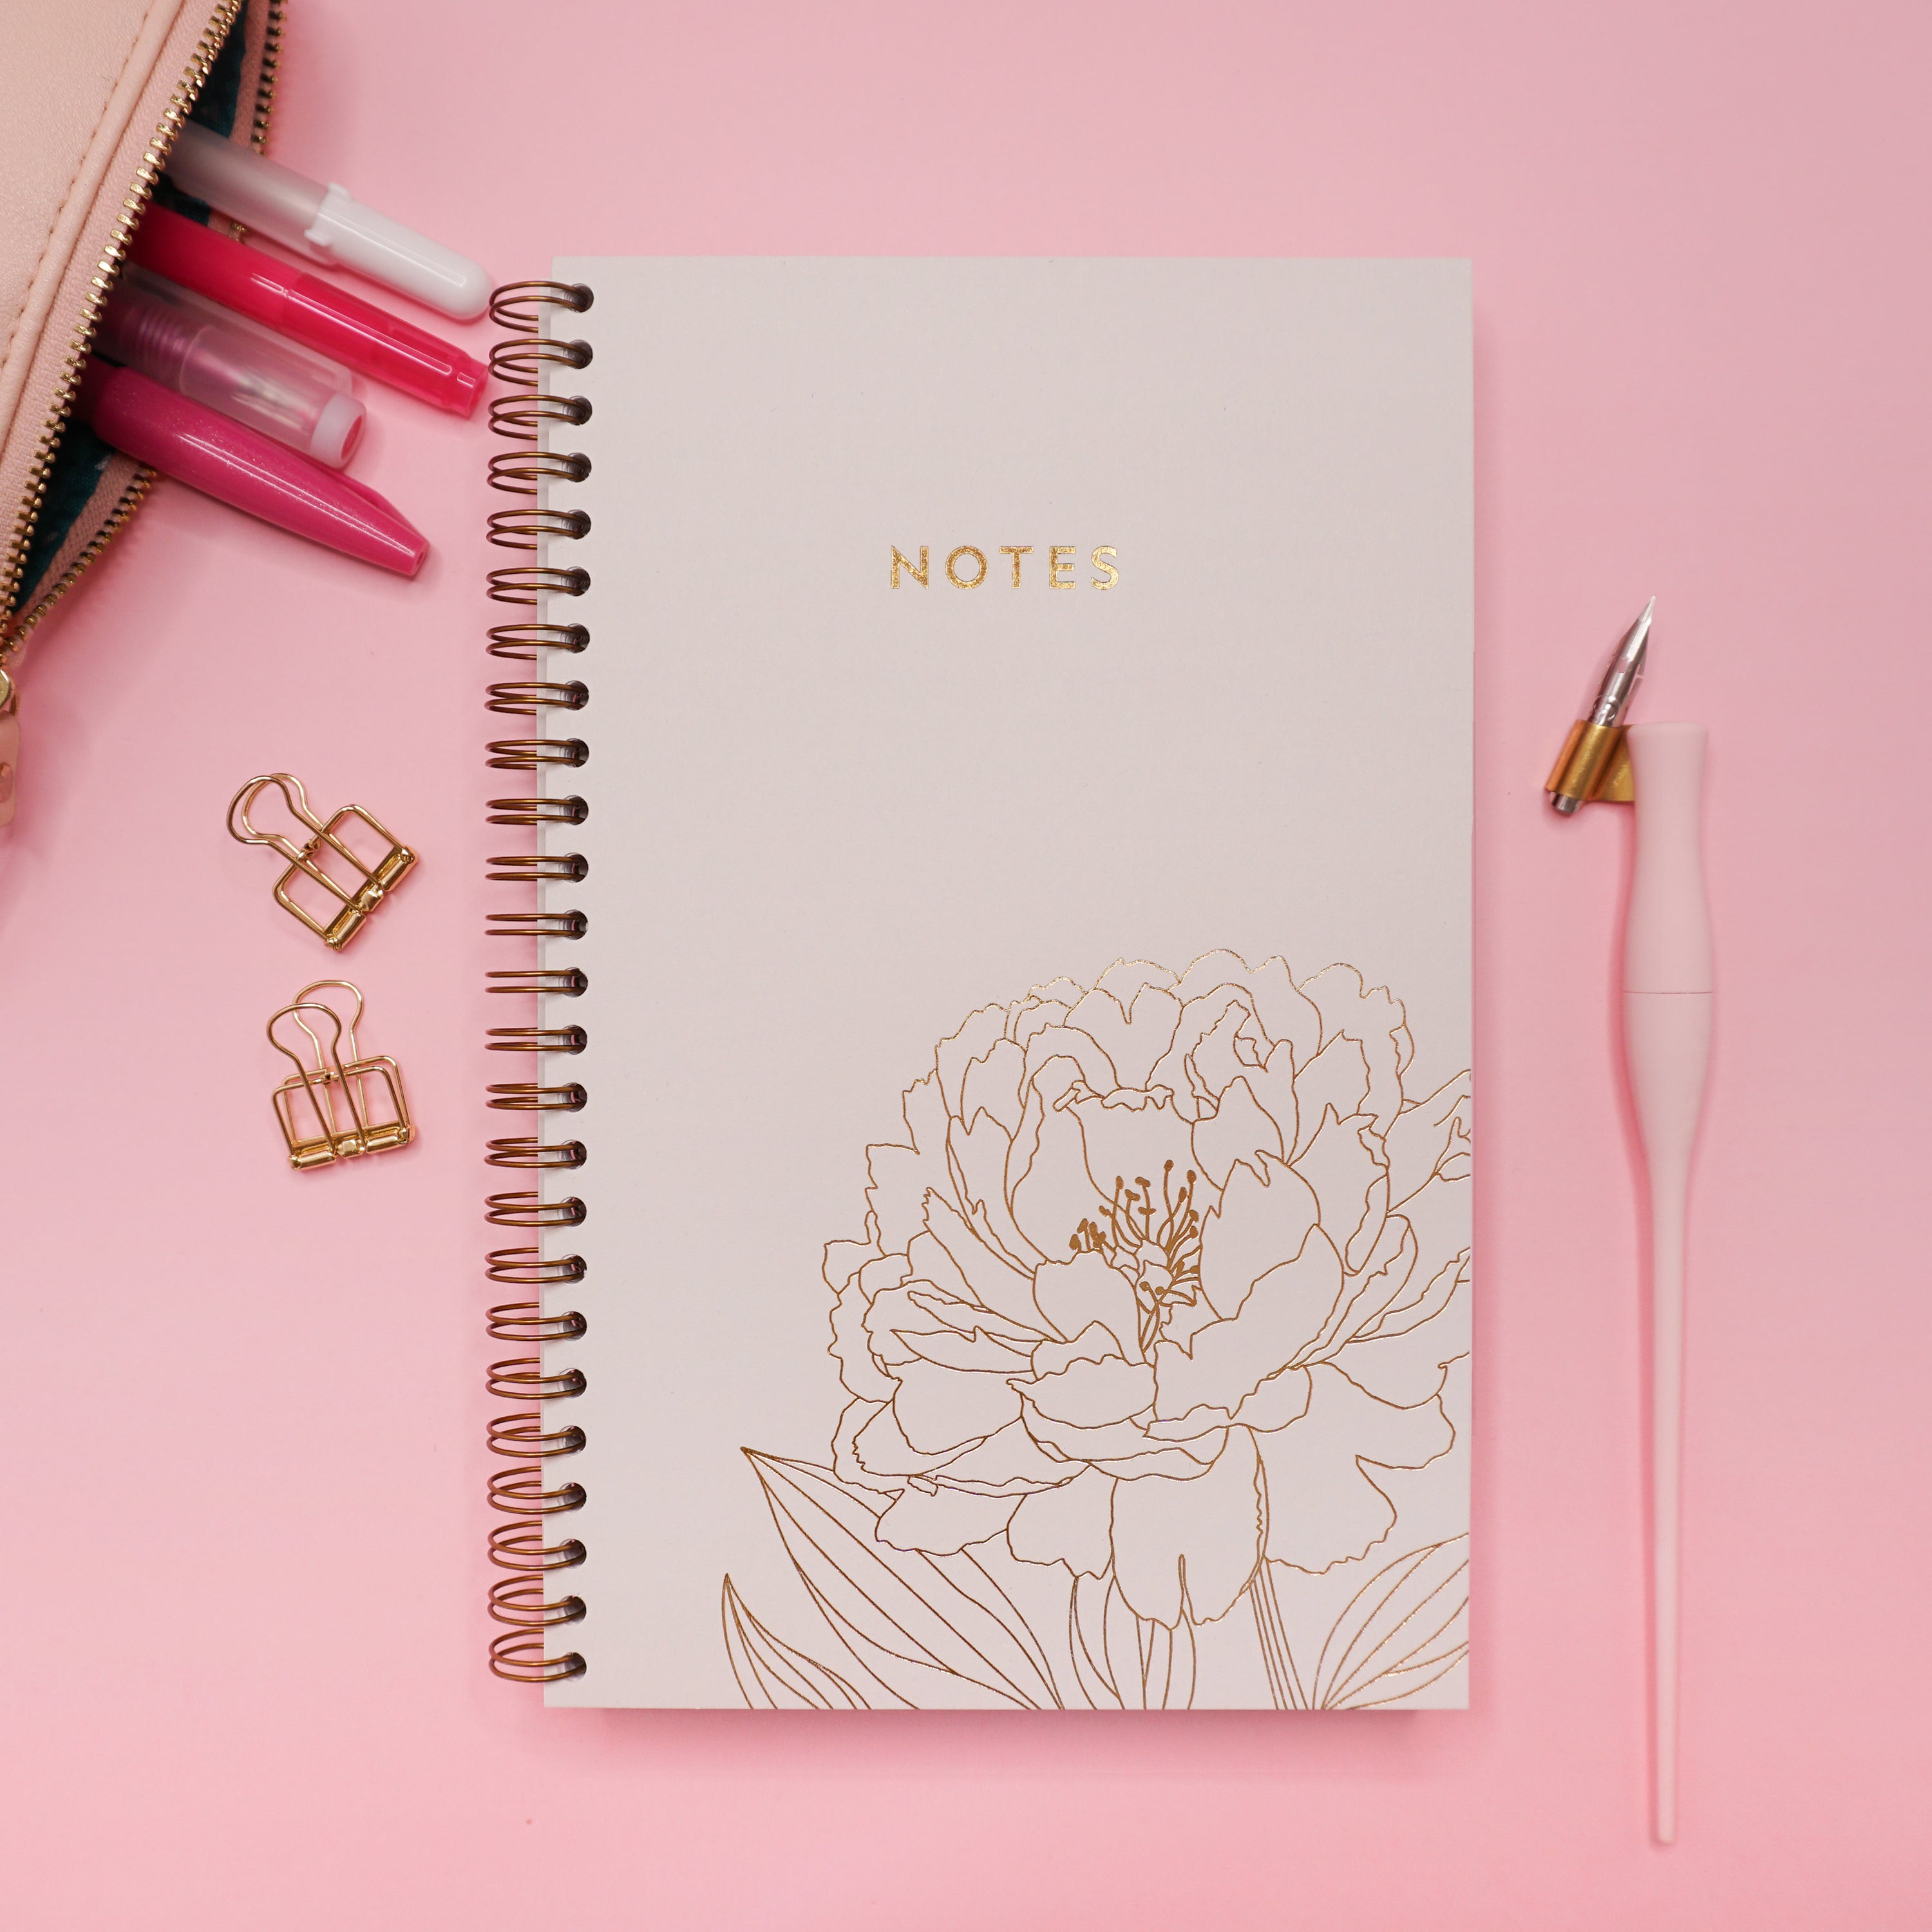 Le cahier pivoine, accompagné d'une trousse à crayon et une plume sur fond rose.